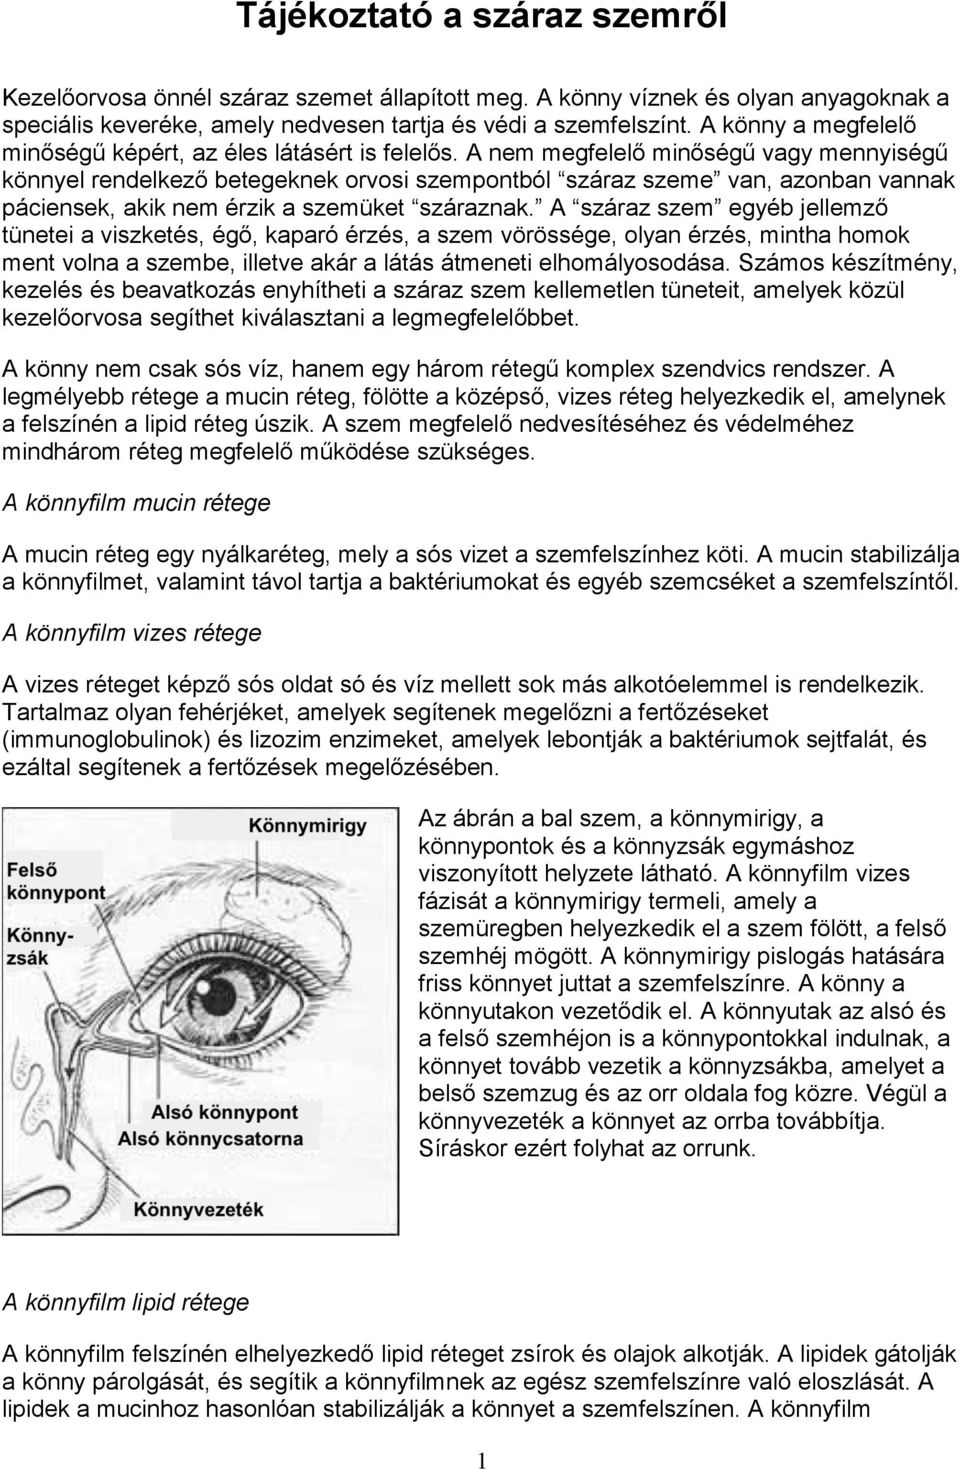 A nem megfelelő minőségű vagy mennyiségű könnyel rendelkező betegeknek orvosi szempontból száraz szeme van, azonban vannak páciensek, akik nem érzik a szemüket száraznak.